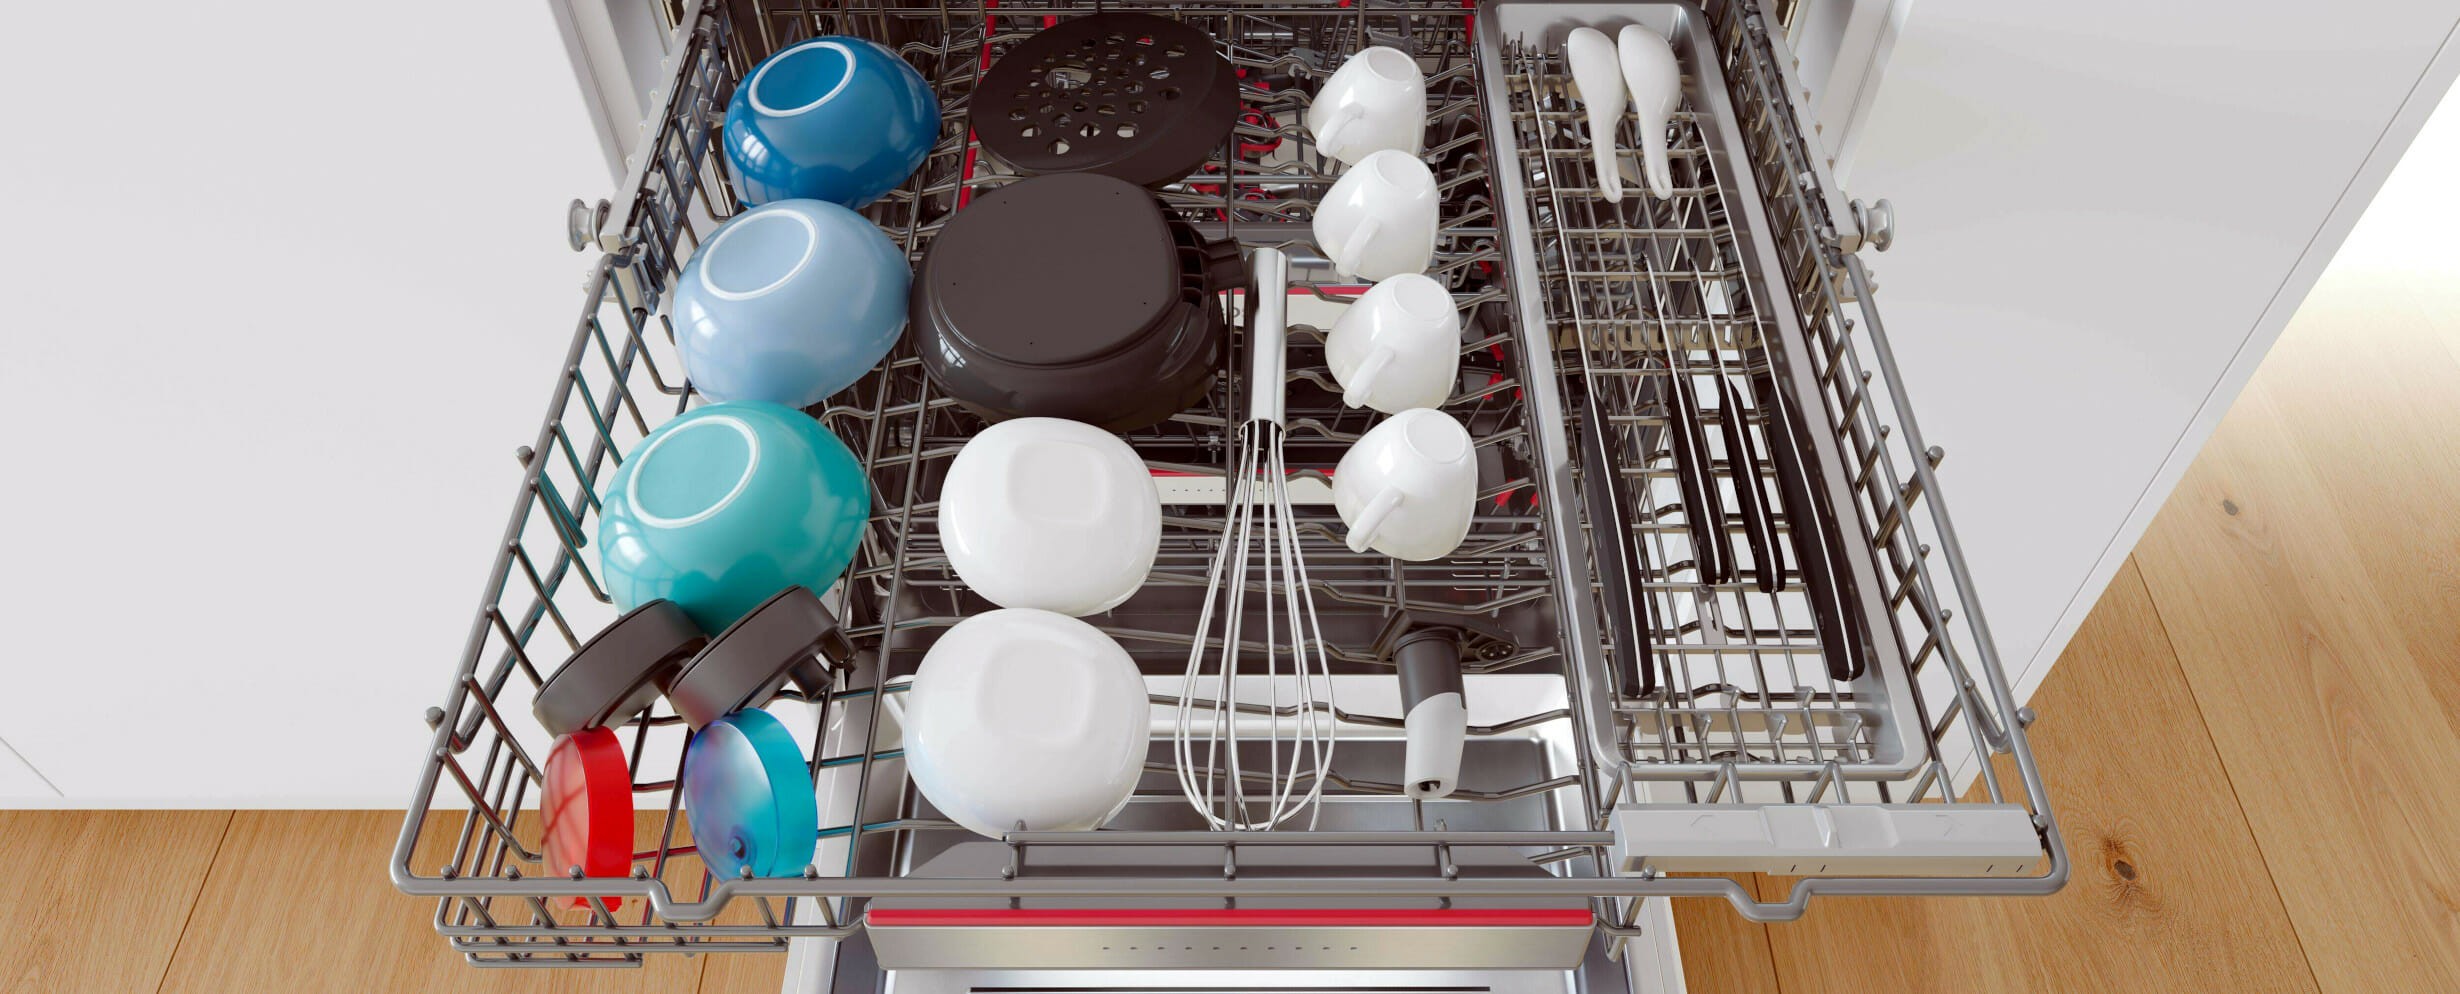 Ремонт посудомоечных машин Bosch своими руками. Устройство посудомоечной машины | Дачная жизнь